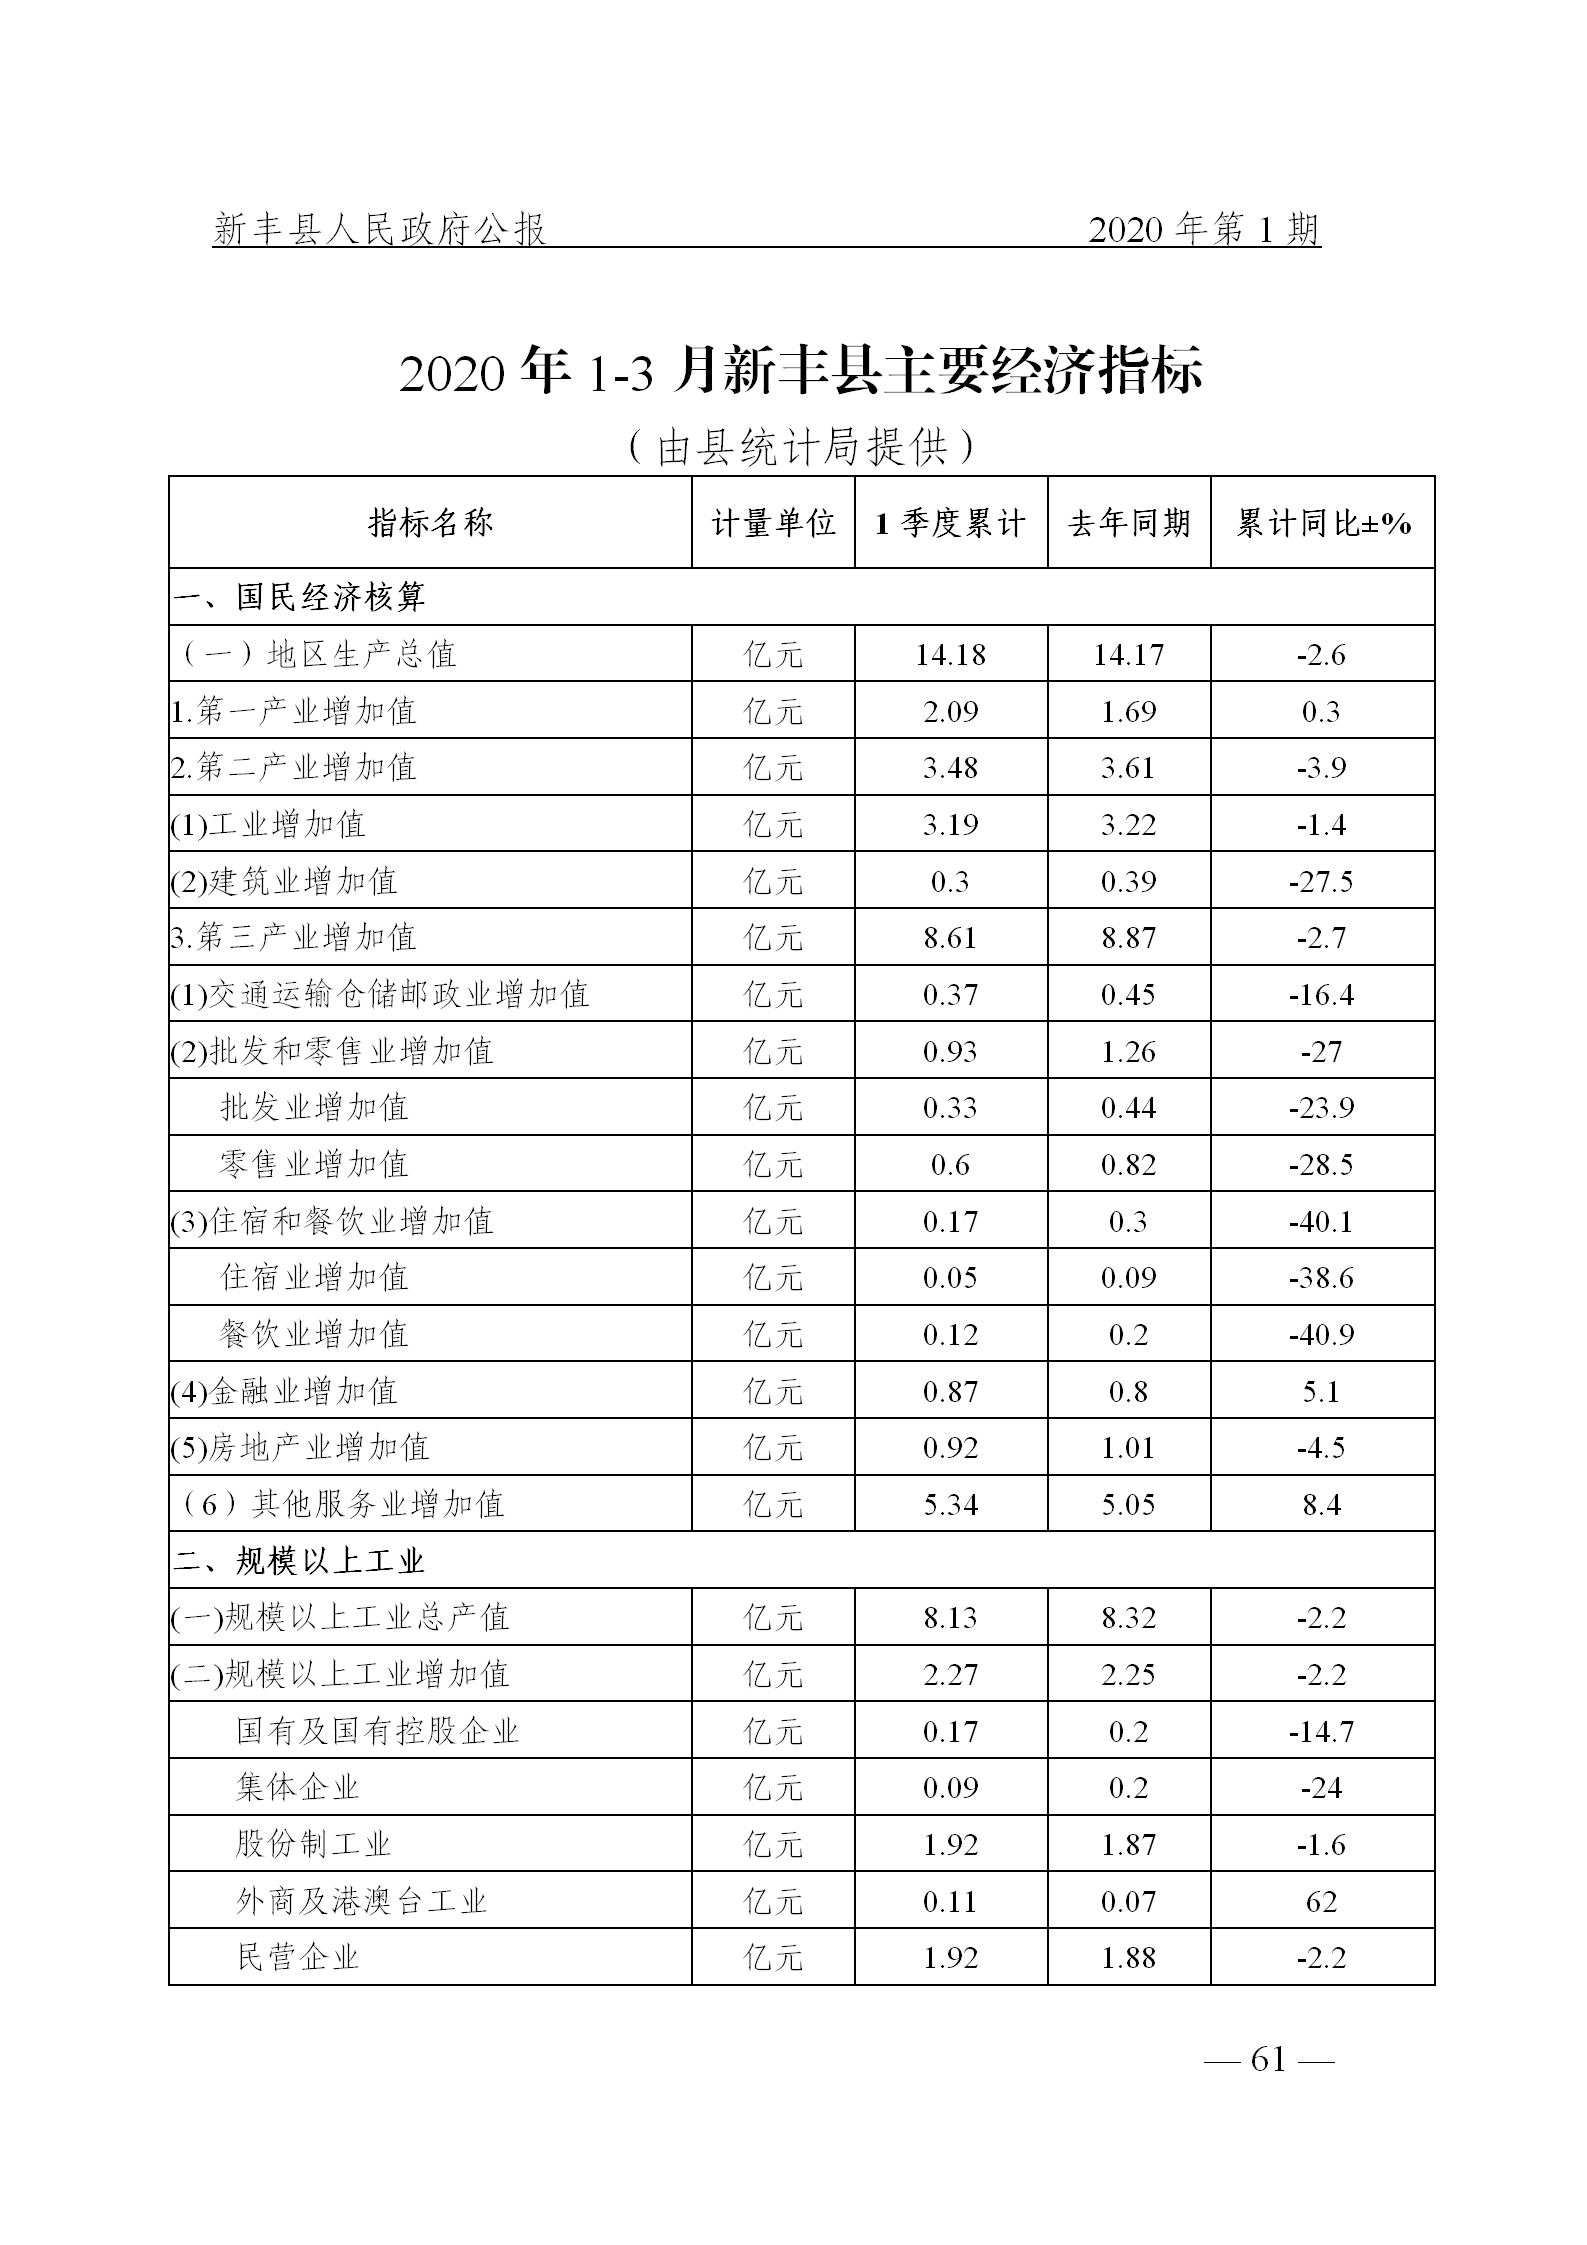 《新丰县人民政府公报》2020年第1期(1)_61.png